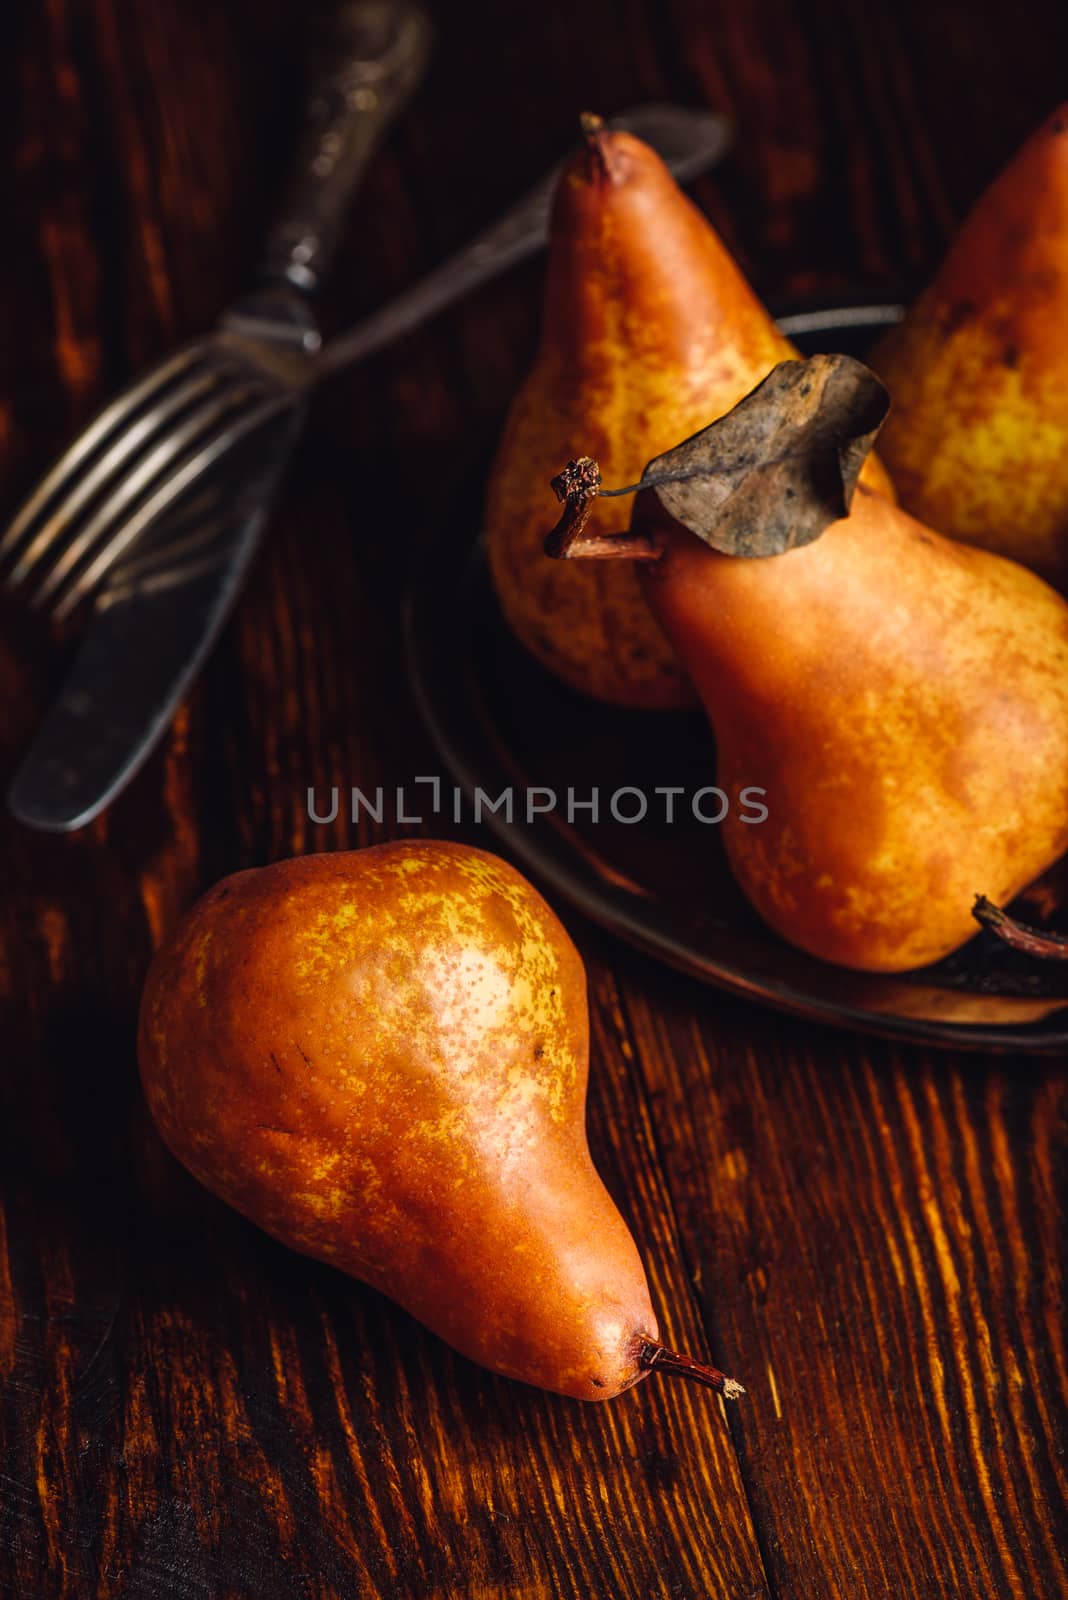 Few Golden Pears on Table. by Seva_blsv